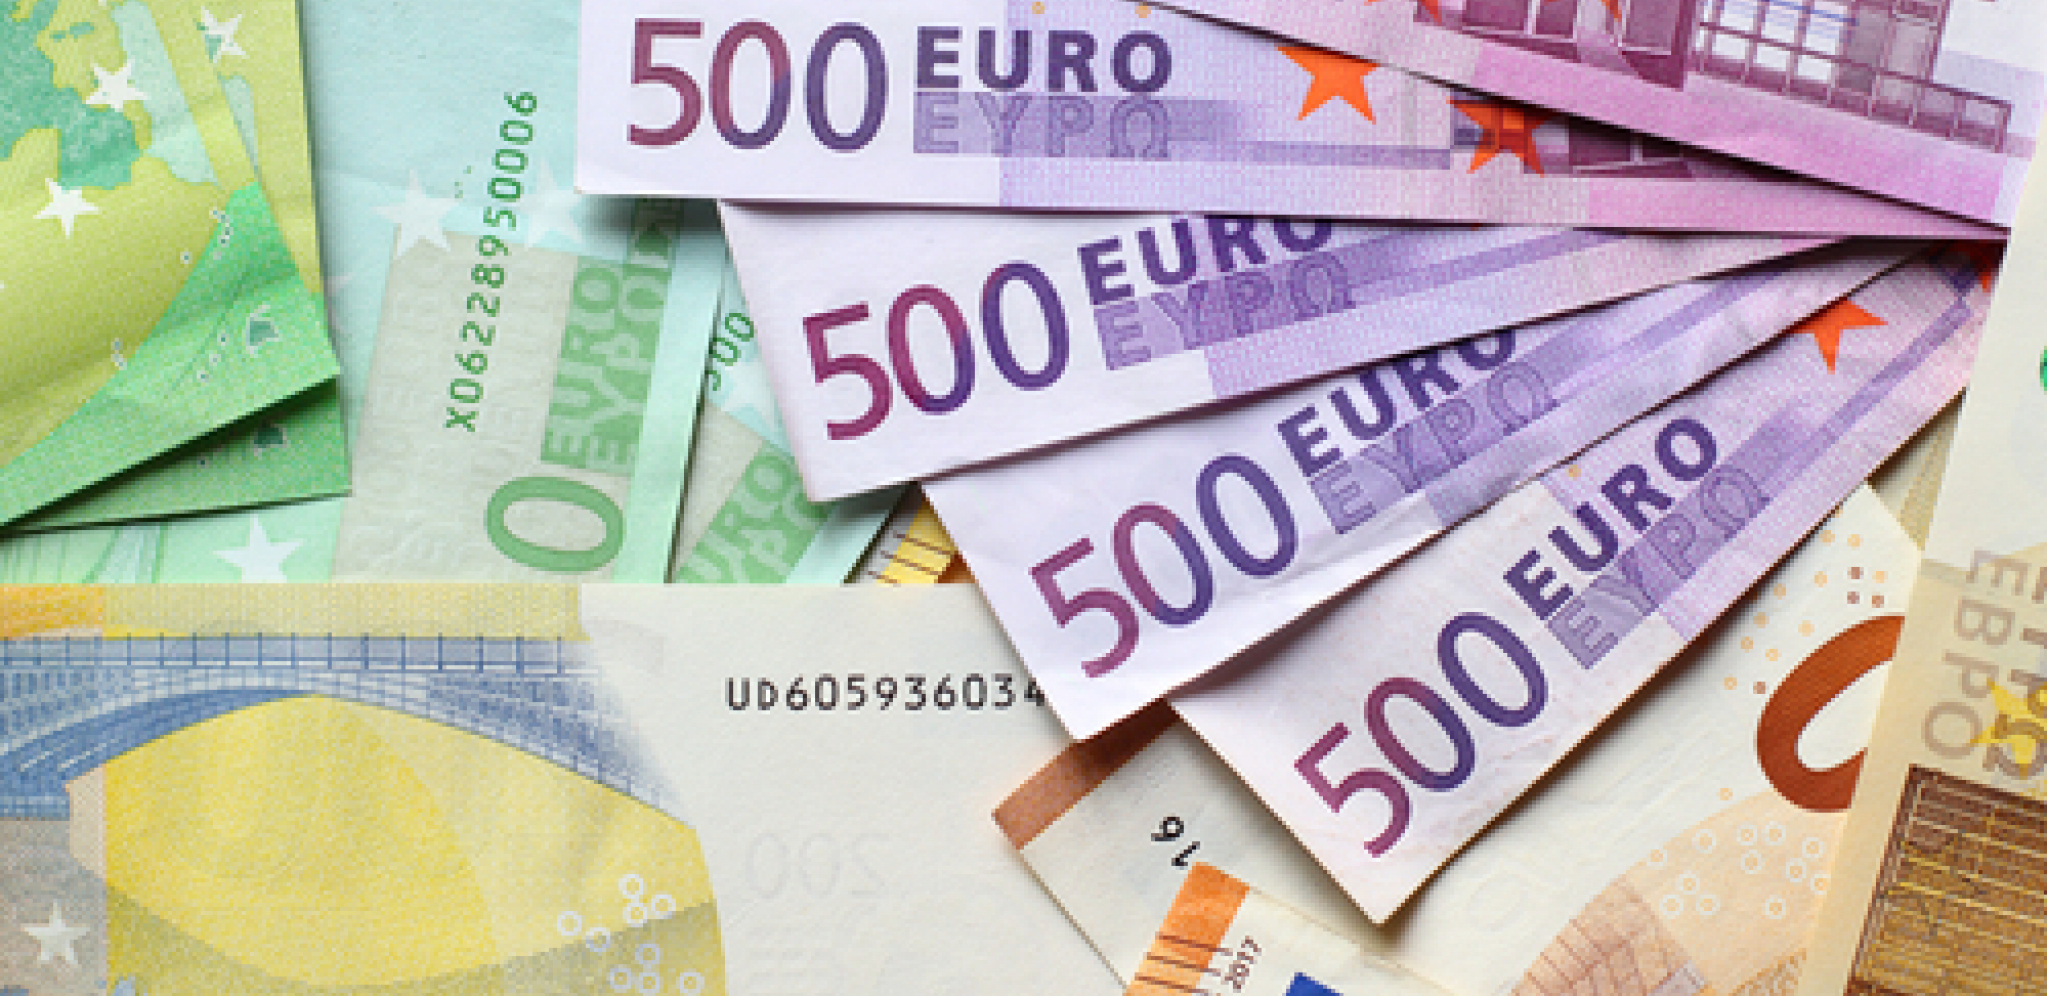 DINAR OJAČAO U ODNOSU NA EVRO Objavljena nova kursna lista stranih valuta